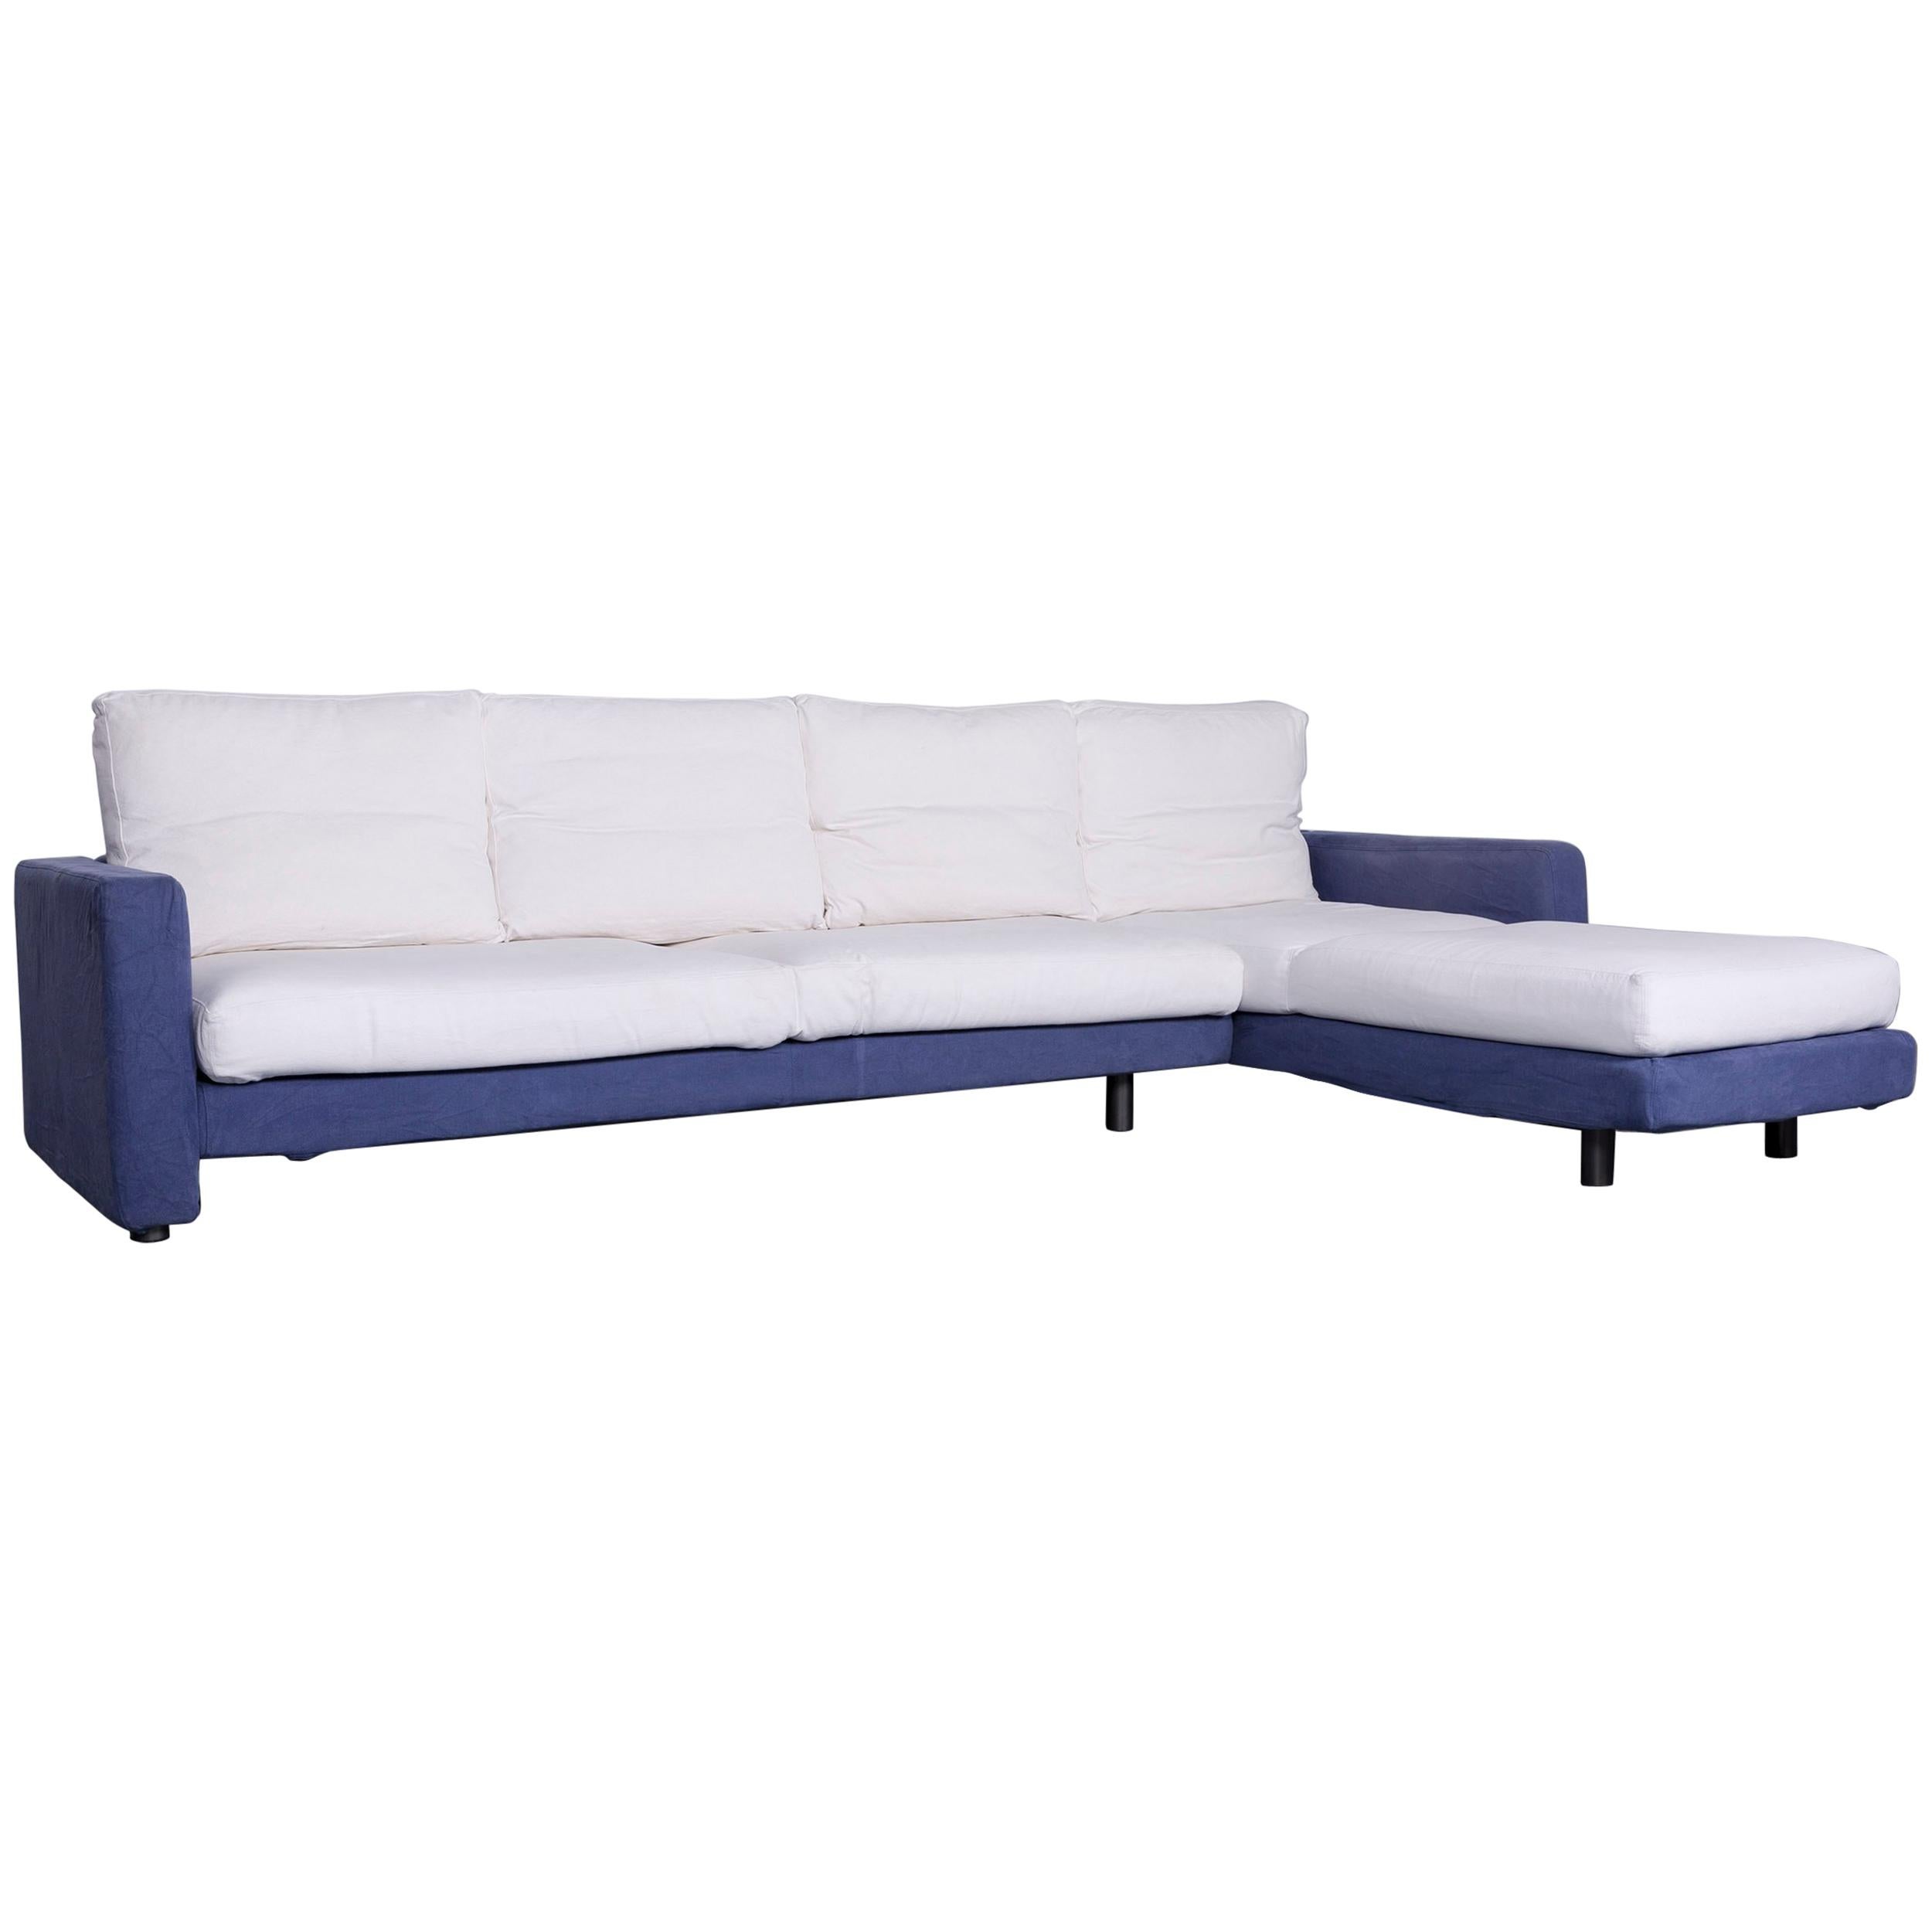 Dema Designer Fabric Sofa White Blue Corner Sofa Couch For Sale